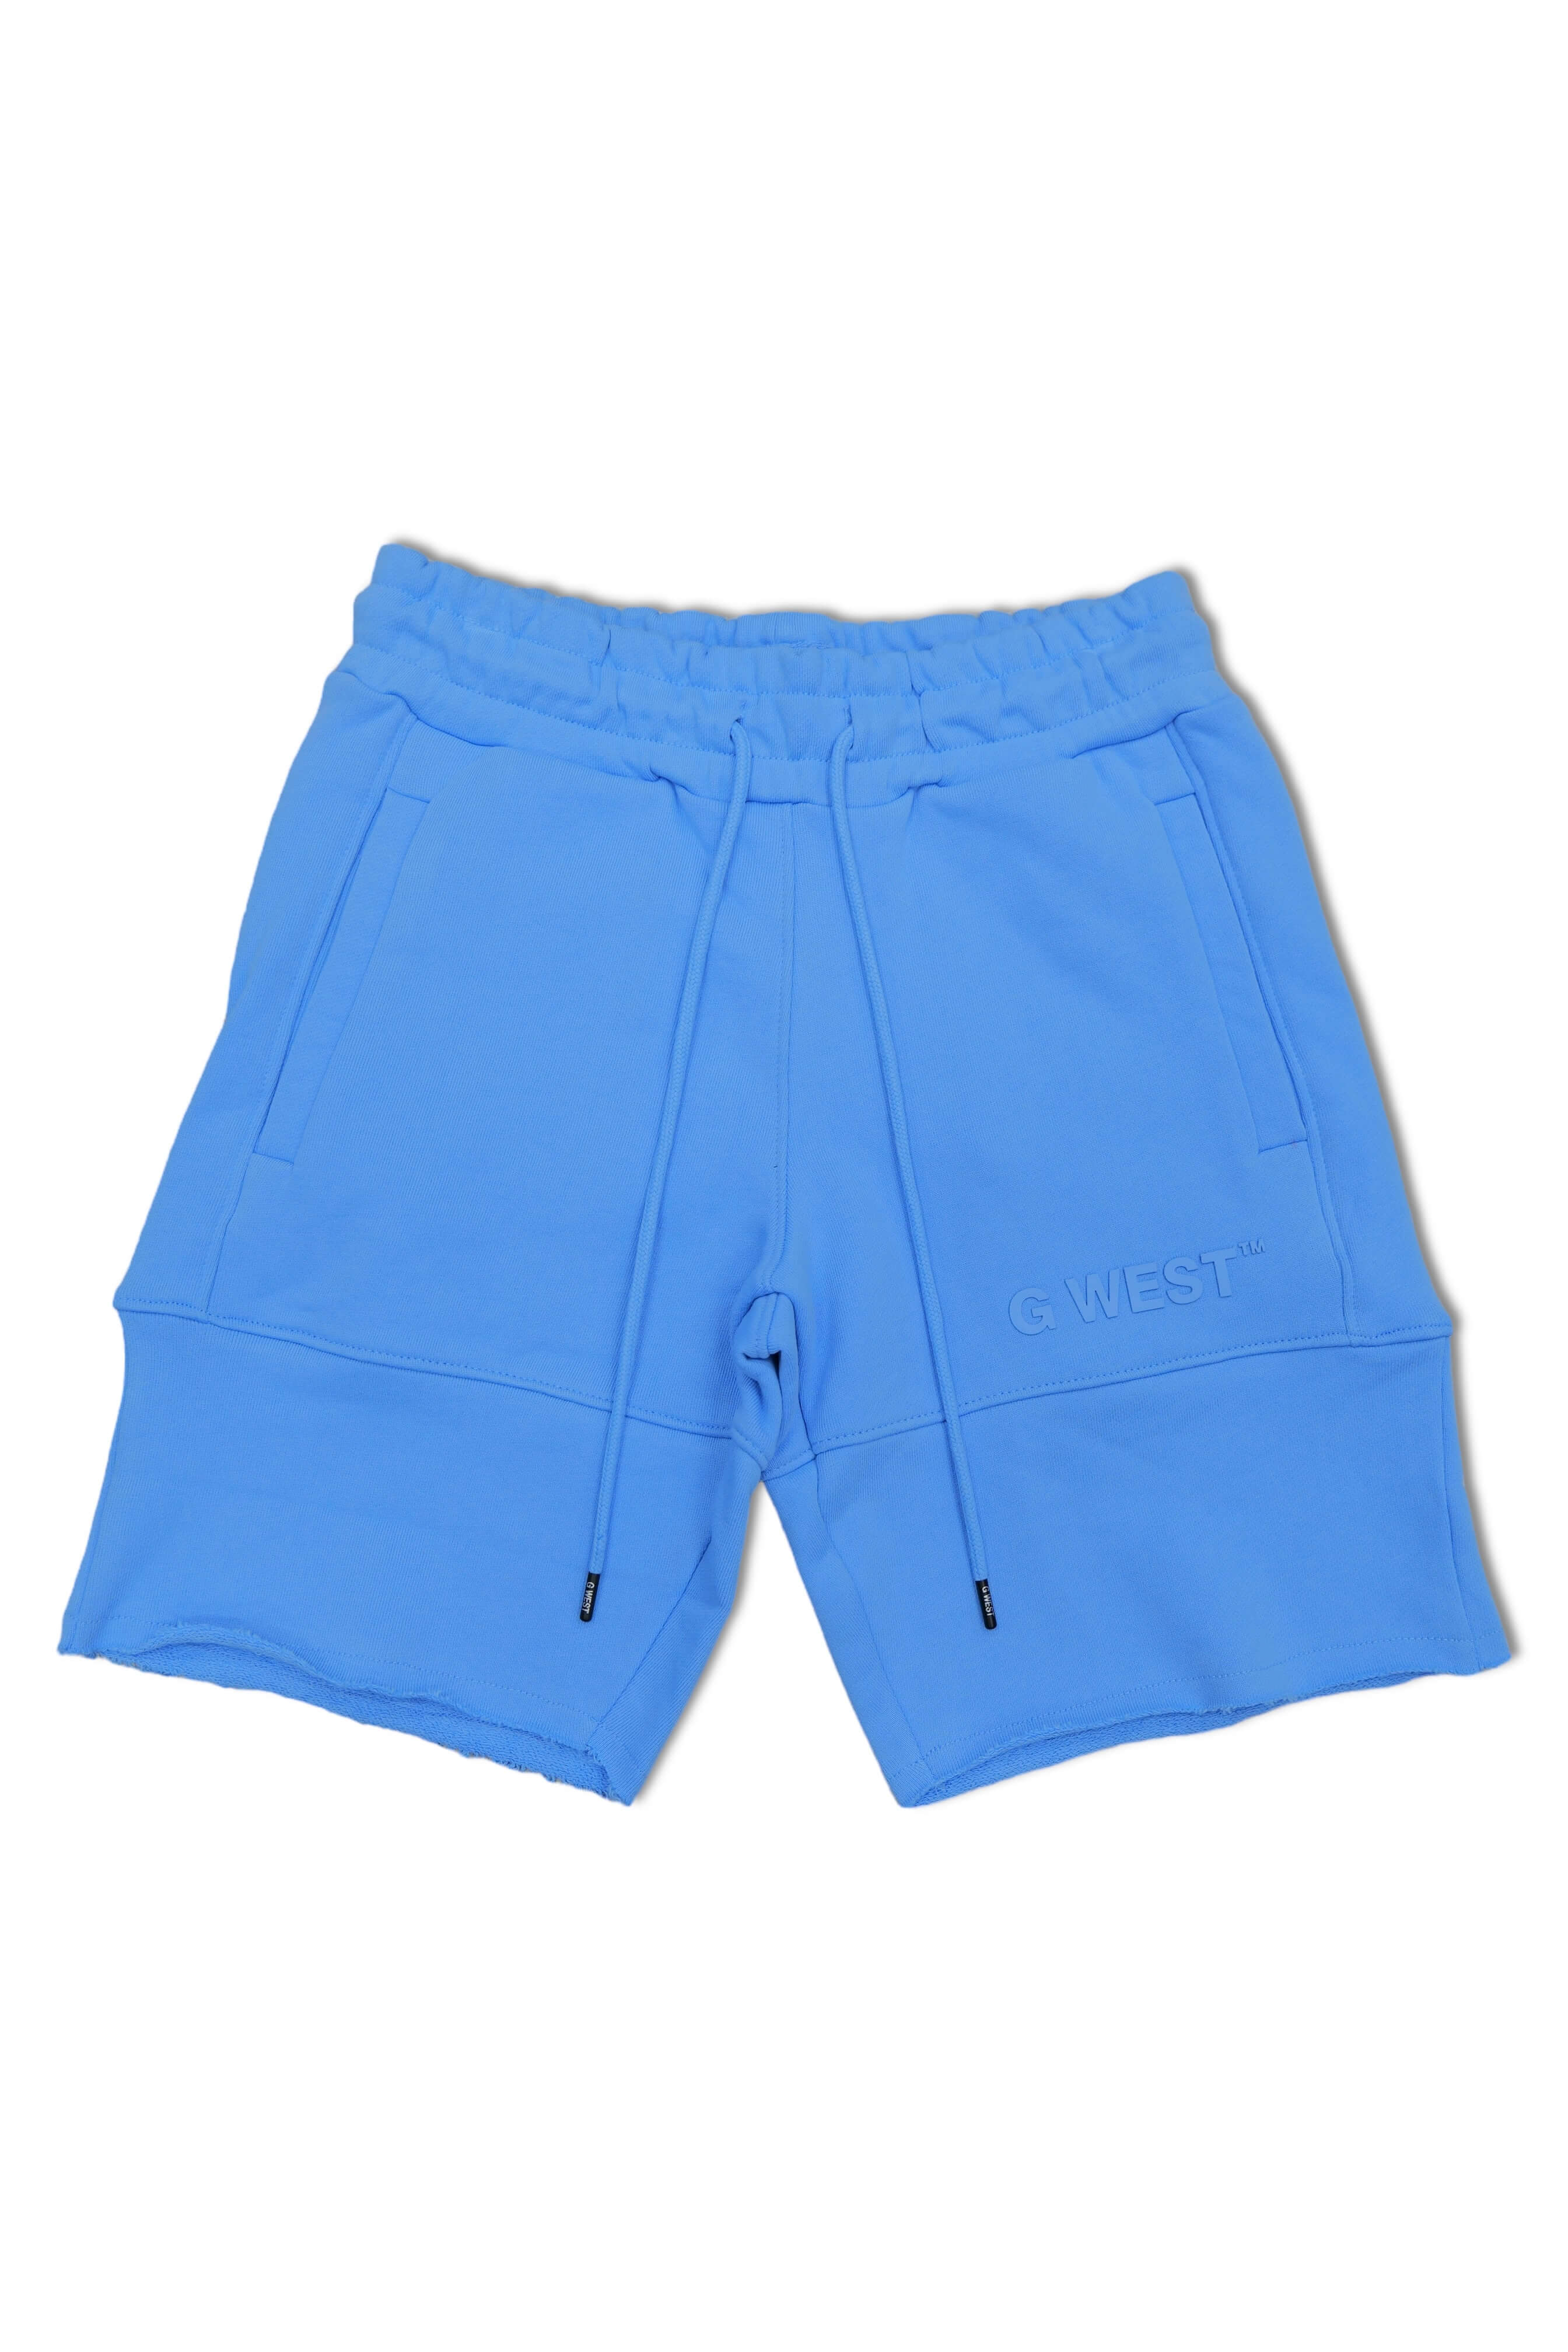 G West Sweat Shorts -University Blue